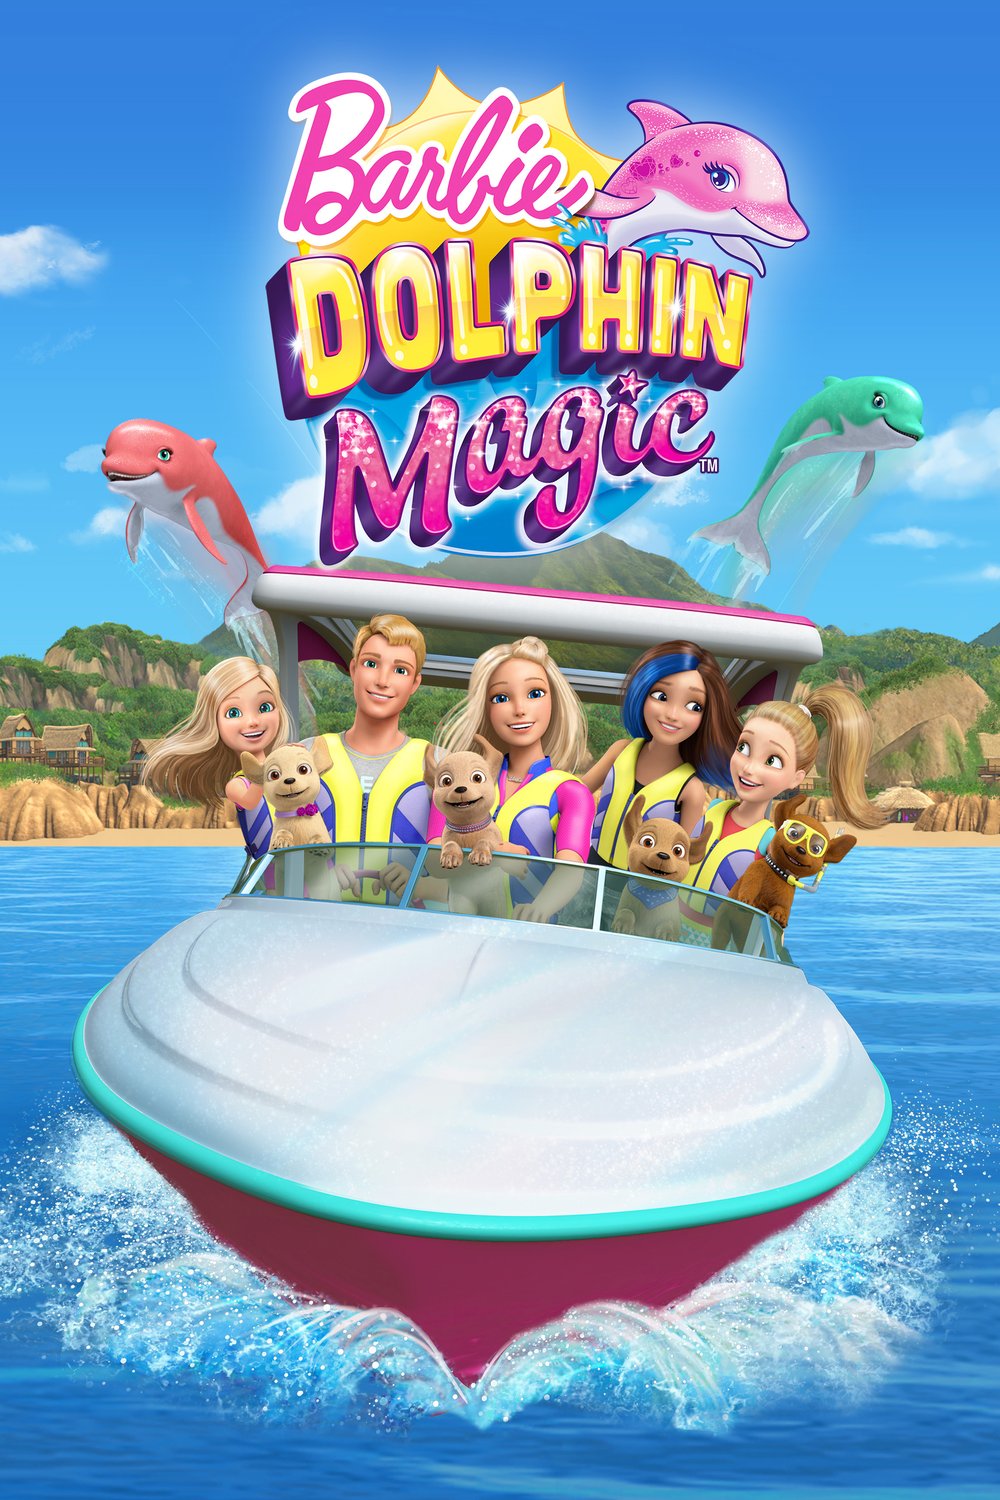 L'affiche du film Barbie: Dolphin Magic